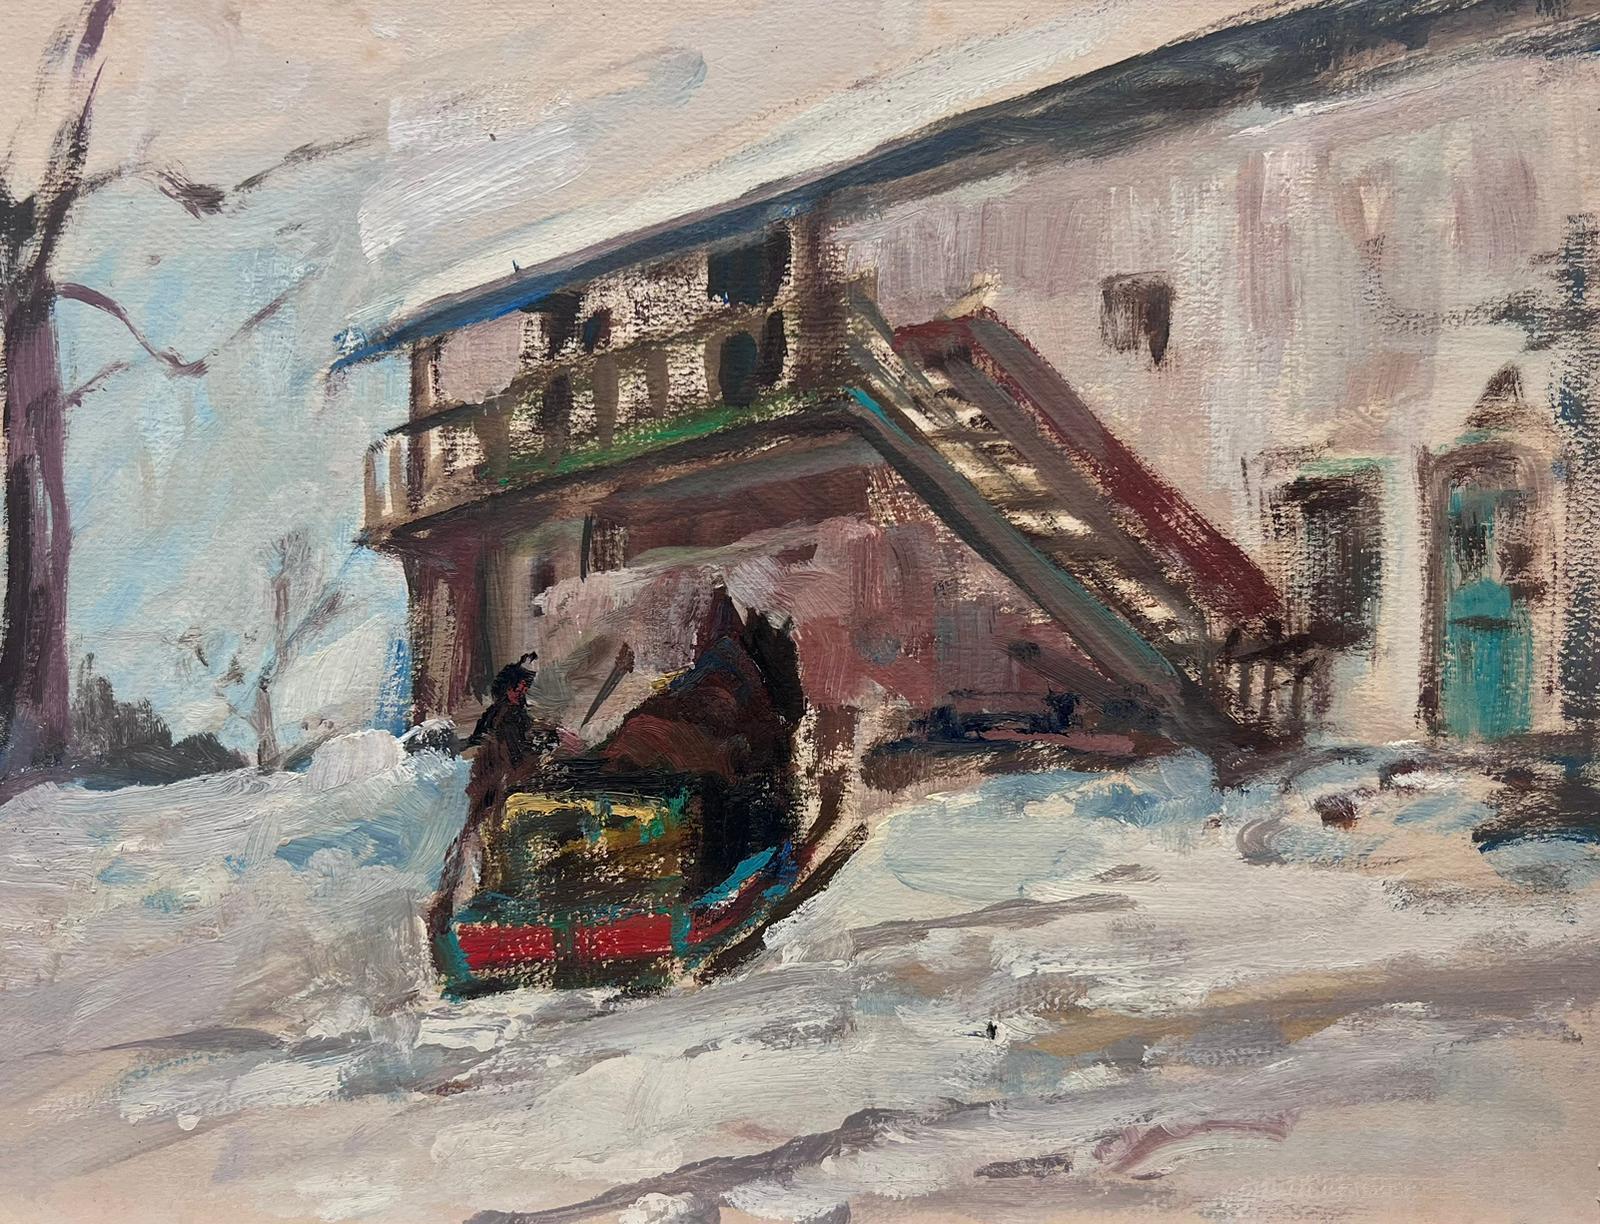 Leon Hatot Figurative Painting – Figuren in Winter-Schneeflocken-Ski Chalet-Landschaft, Vintage, Französisch-impressionistisches Öl